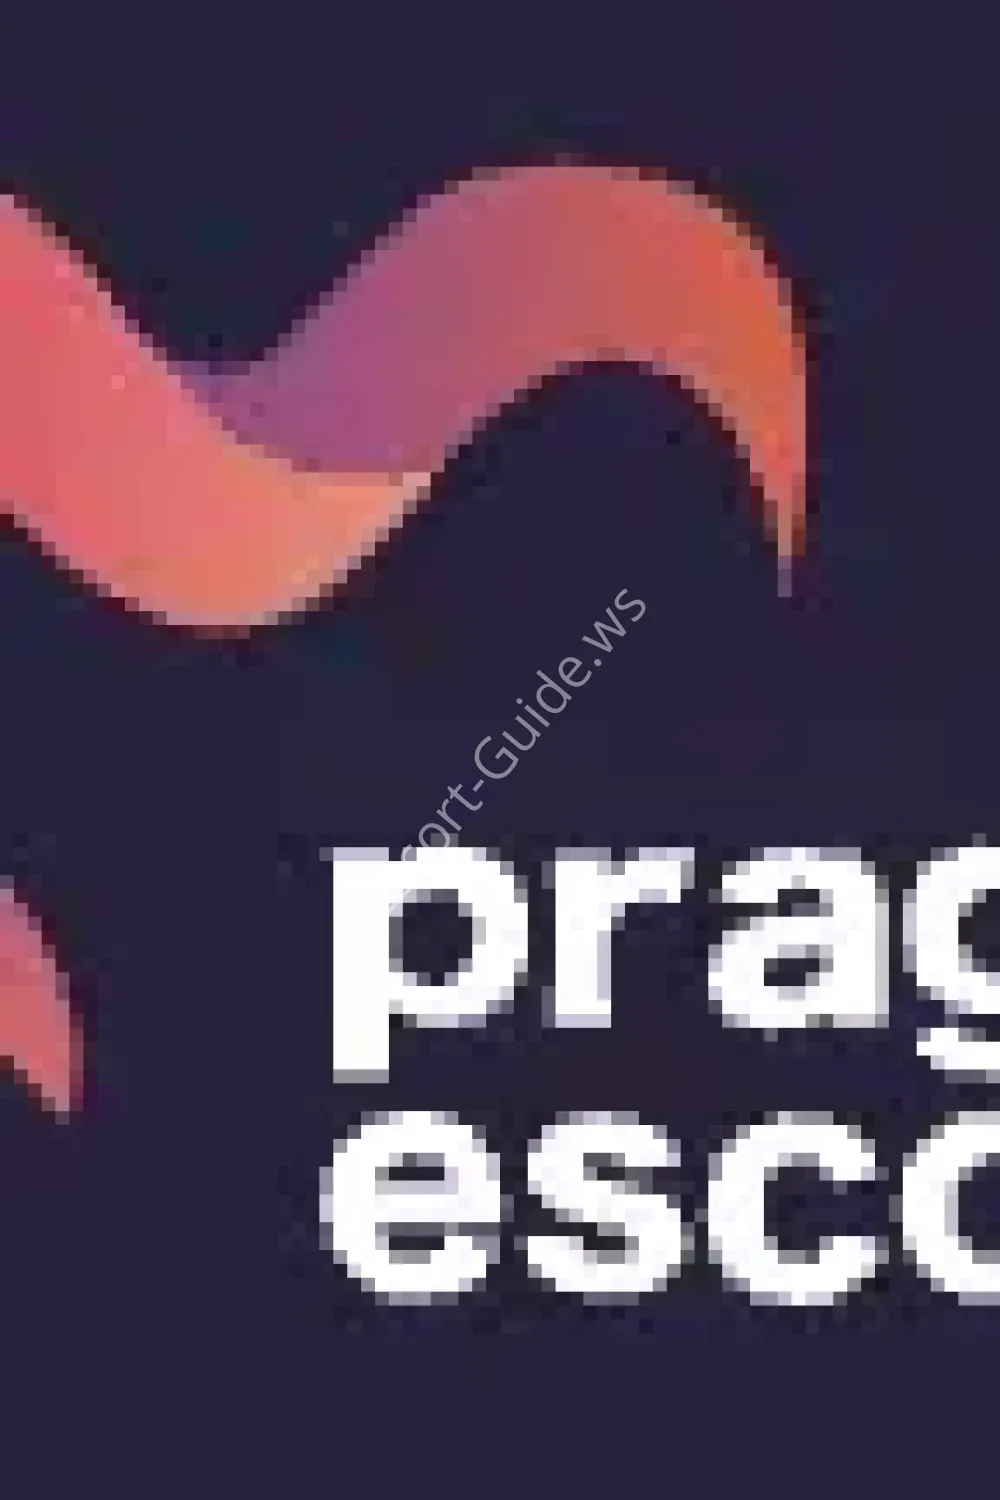 Praguescort